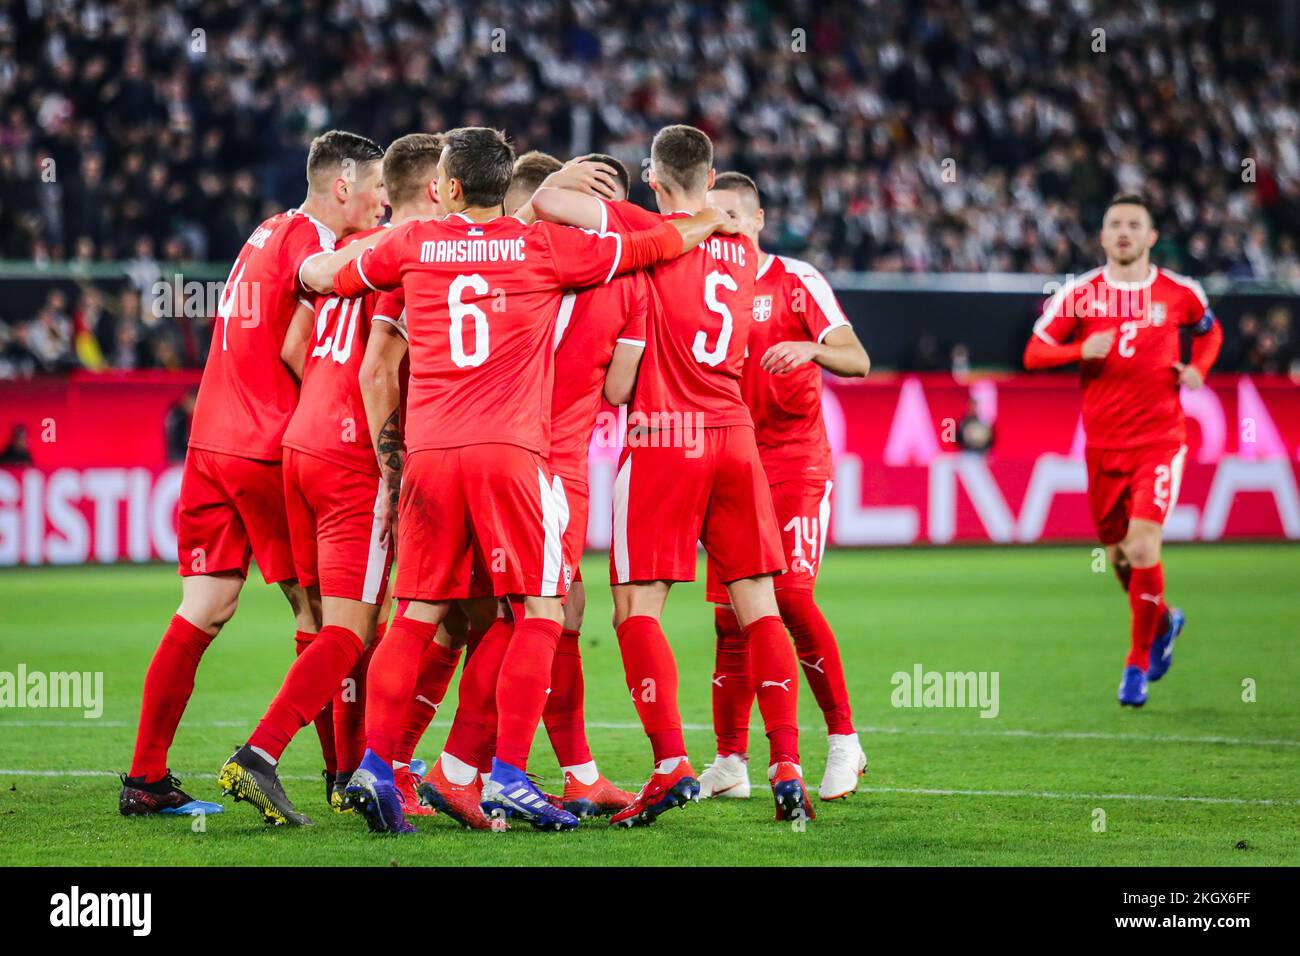 Wolfsburg, Germania, 20 marzo 2019: Squadra nazionale serba che celebra un gol durante la partita di calcio internazionale Germania vs Serbia Foto Stock